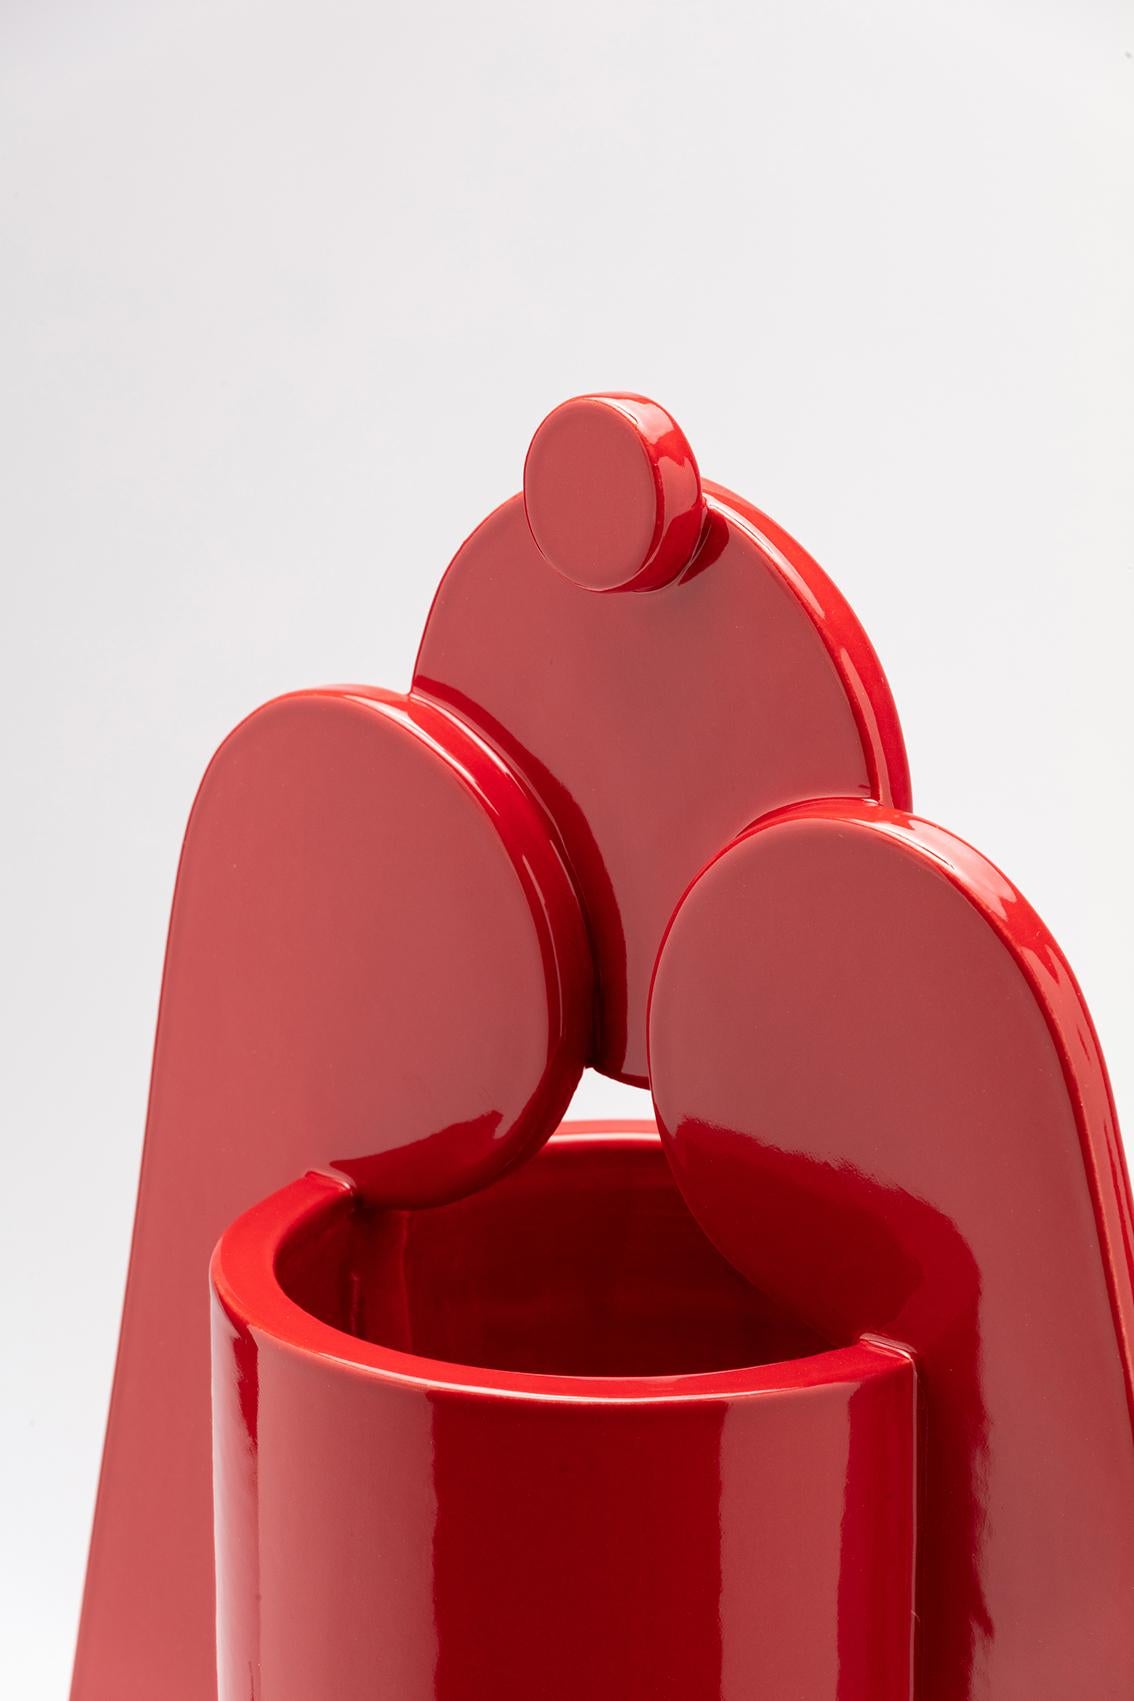 Contemporary Ceramic Set Duo Vases Red Glossy glazed CUORECARPENITO ME∞TE For Sale 1